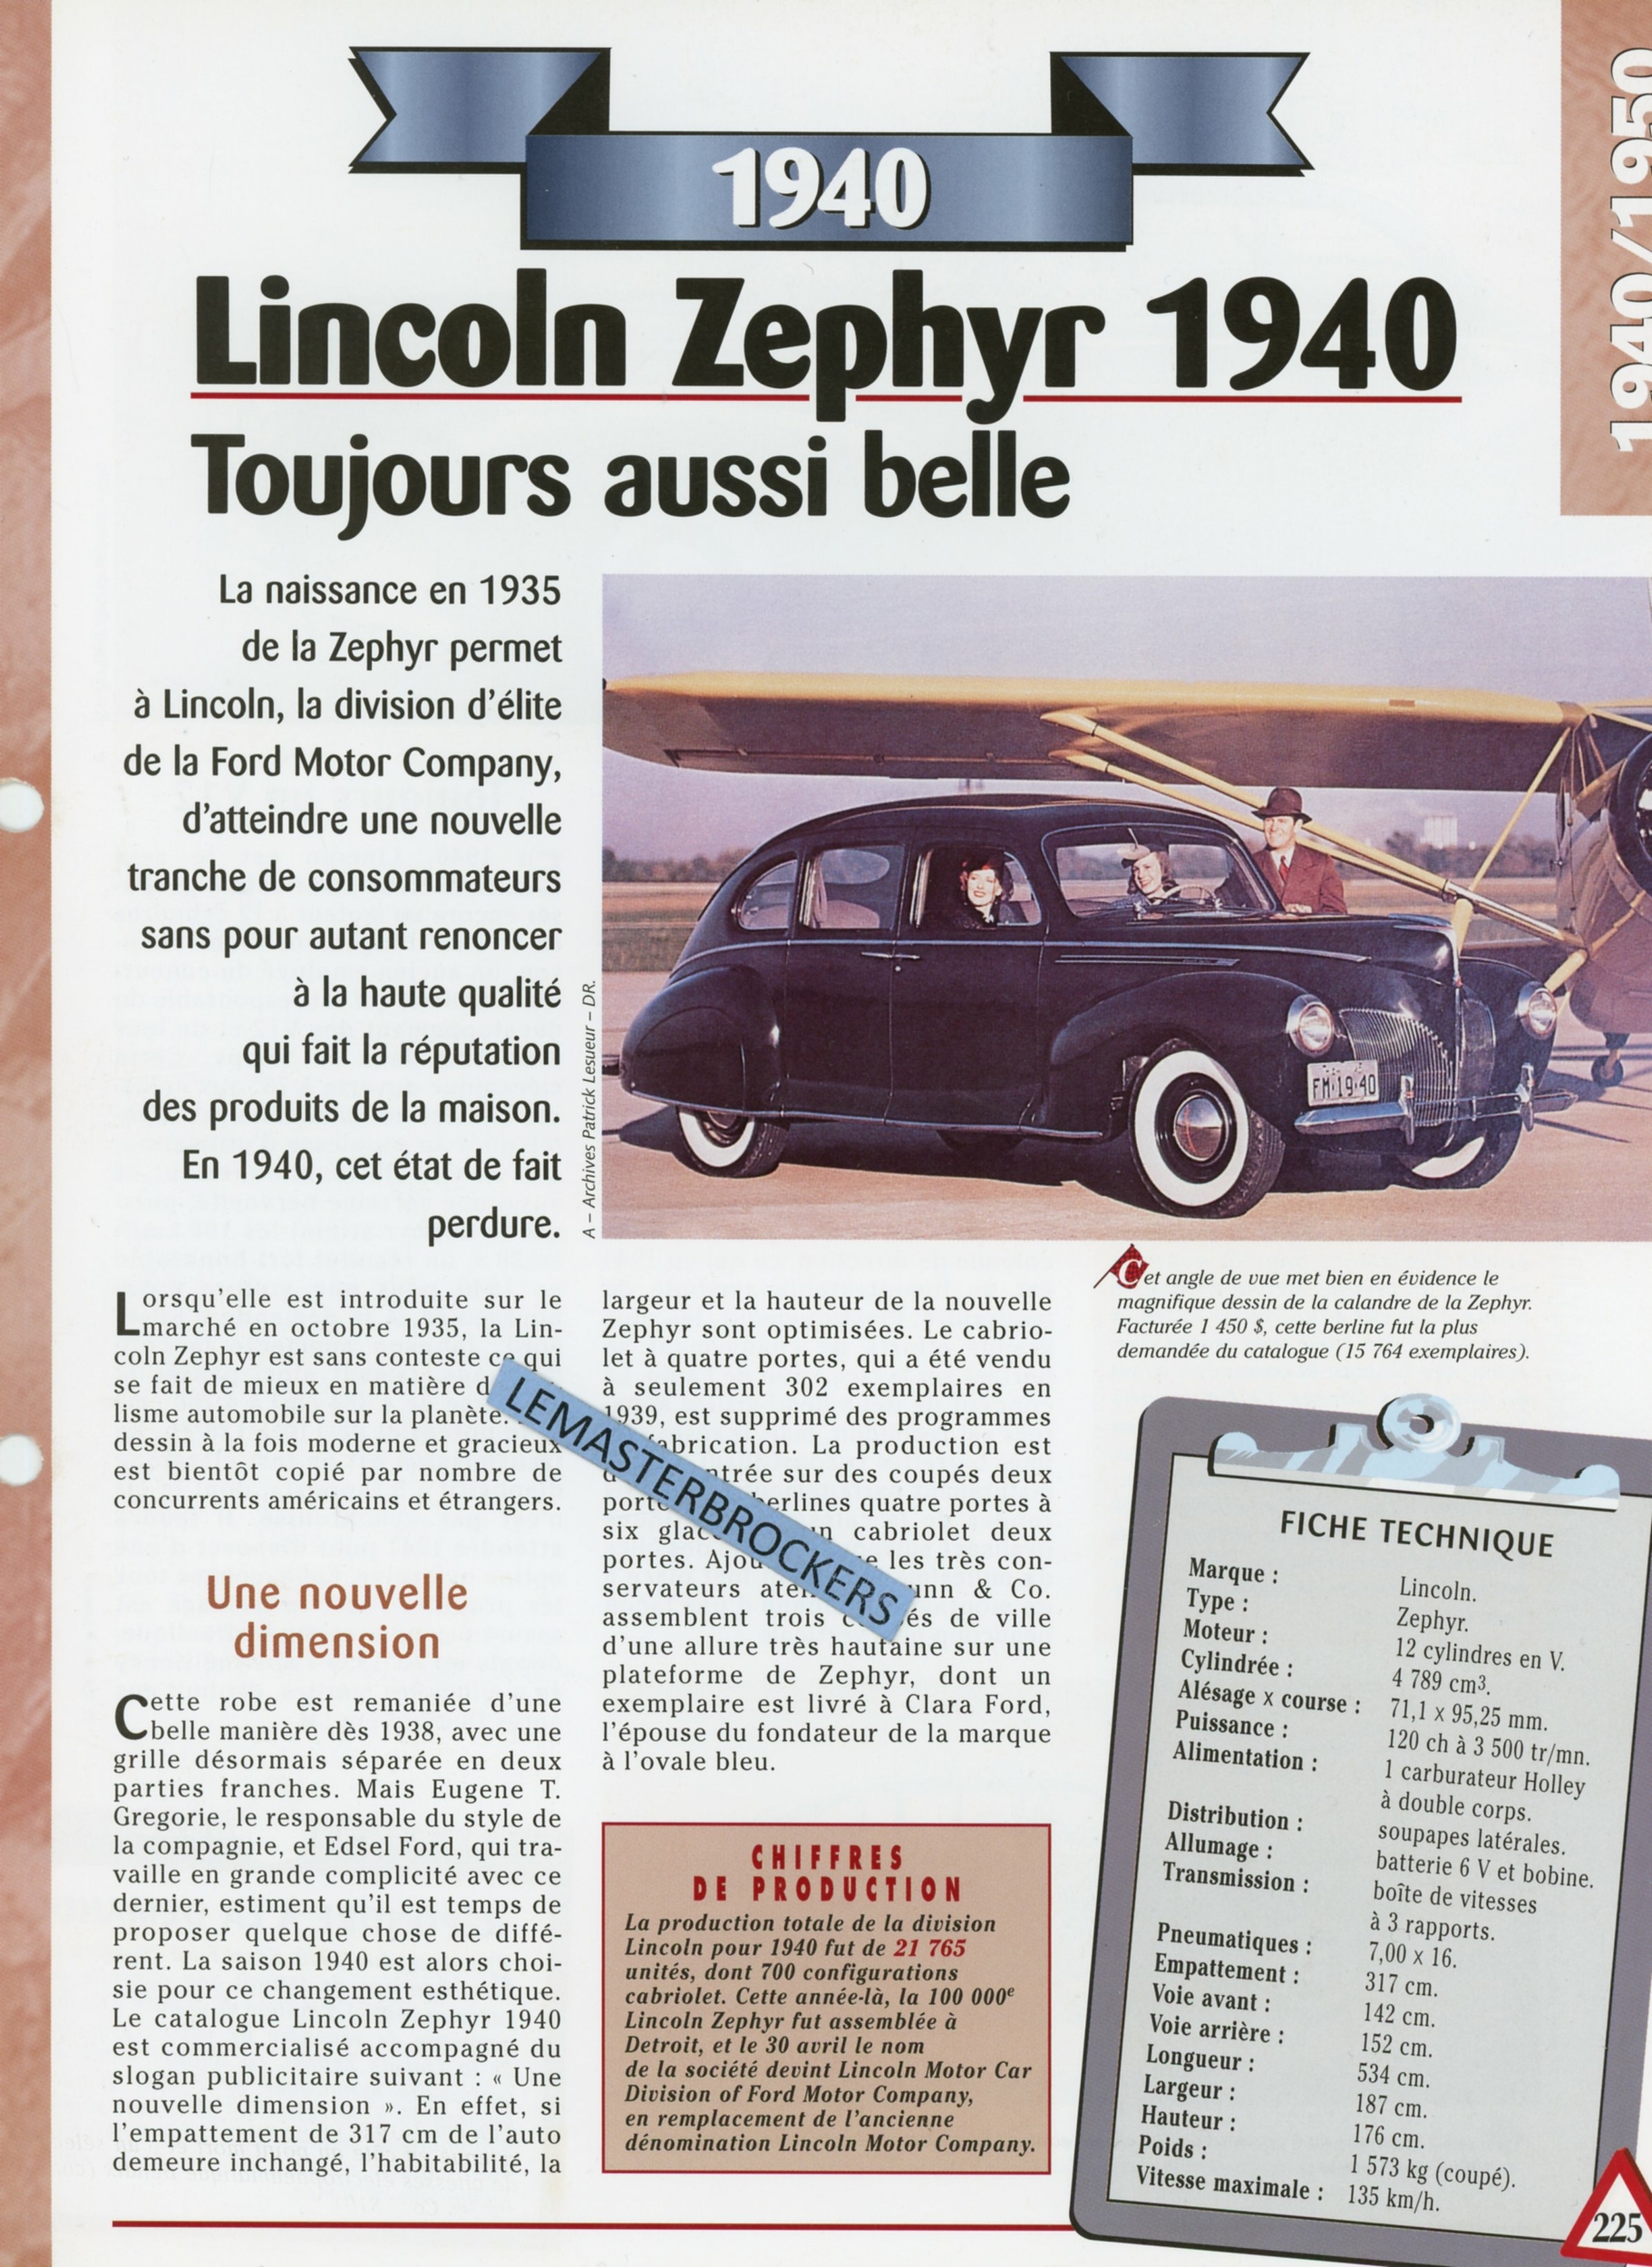 LINCOLN ZEPHYR 1940 - FICHE TECHNIQUE - FICHE AUTO - HACHETTE LITTÉRATURE AUTOMOBILE